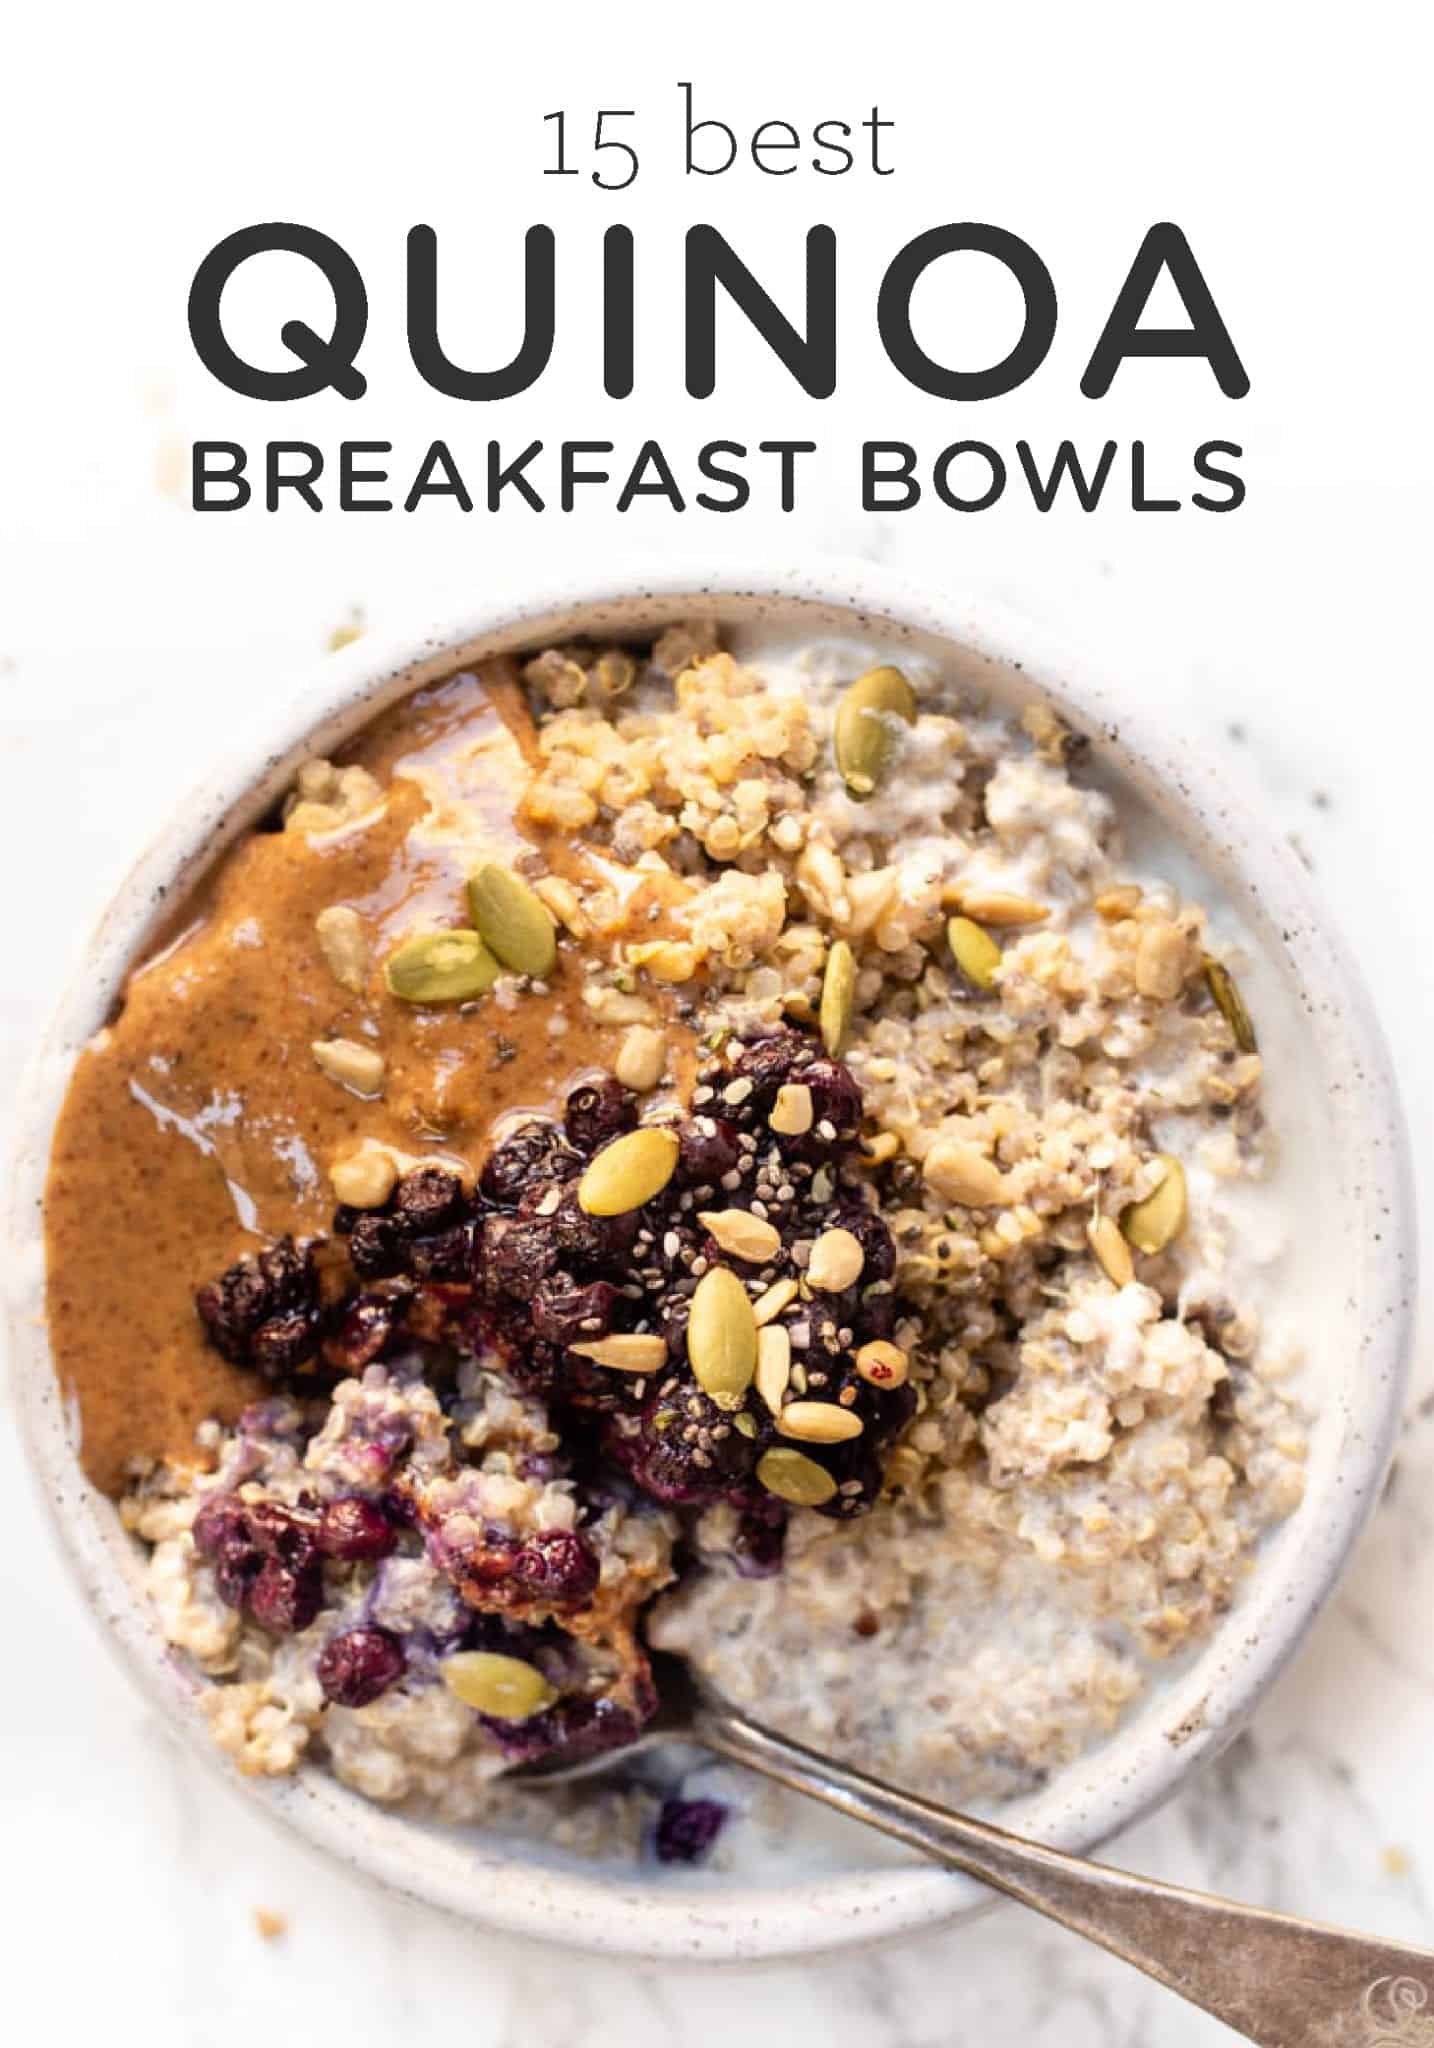 Quinoa Bowl Recipes - 12 Tantalizing Quinoa Bowl Recipes - Tempeh, kale ...